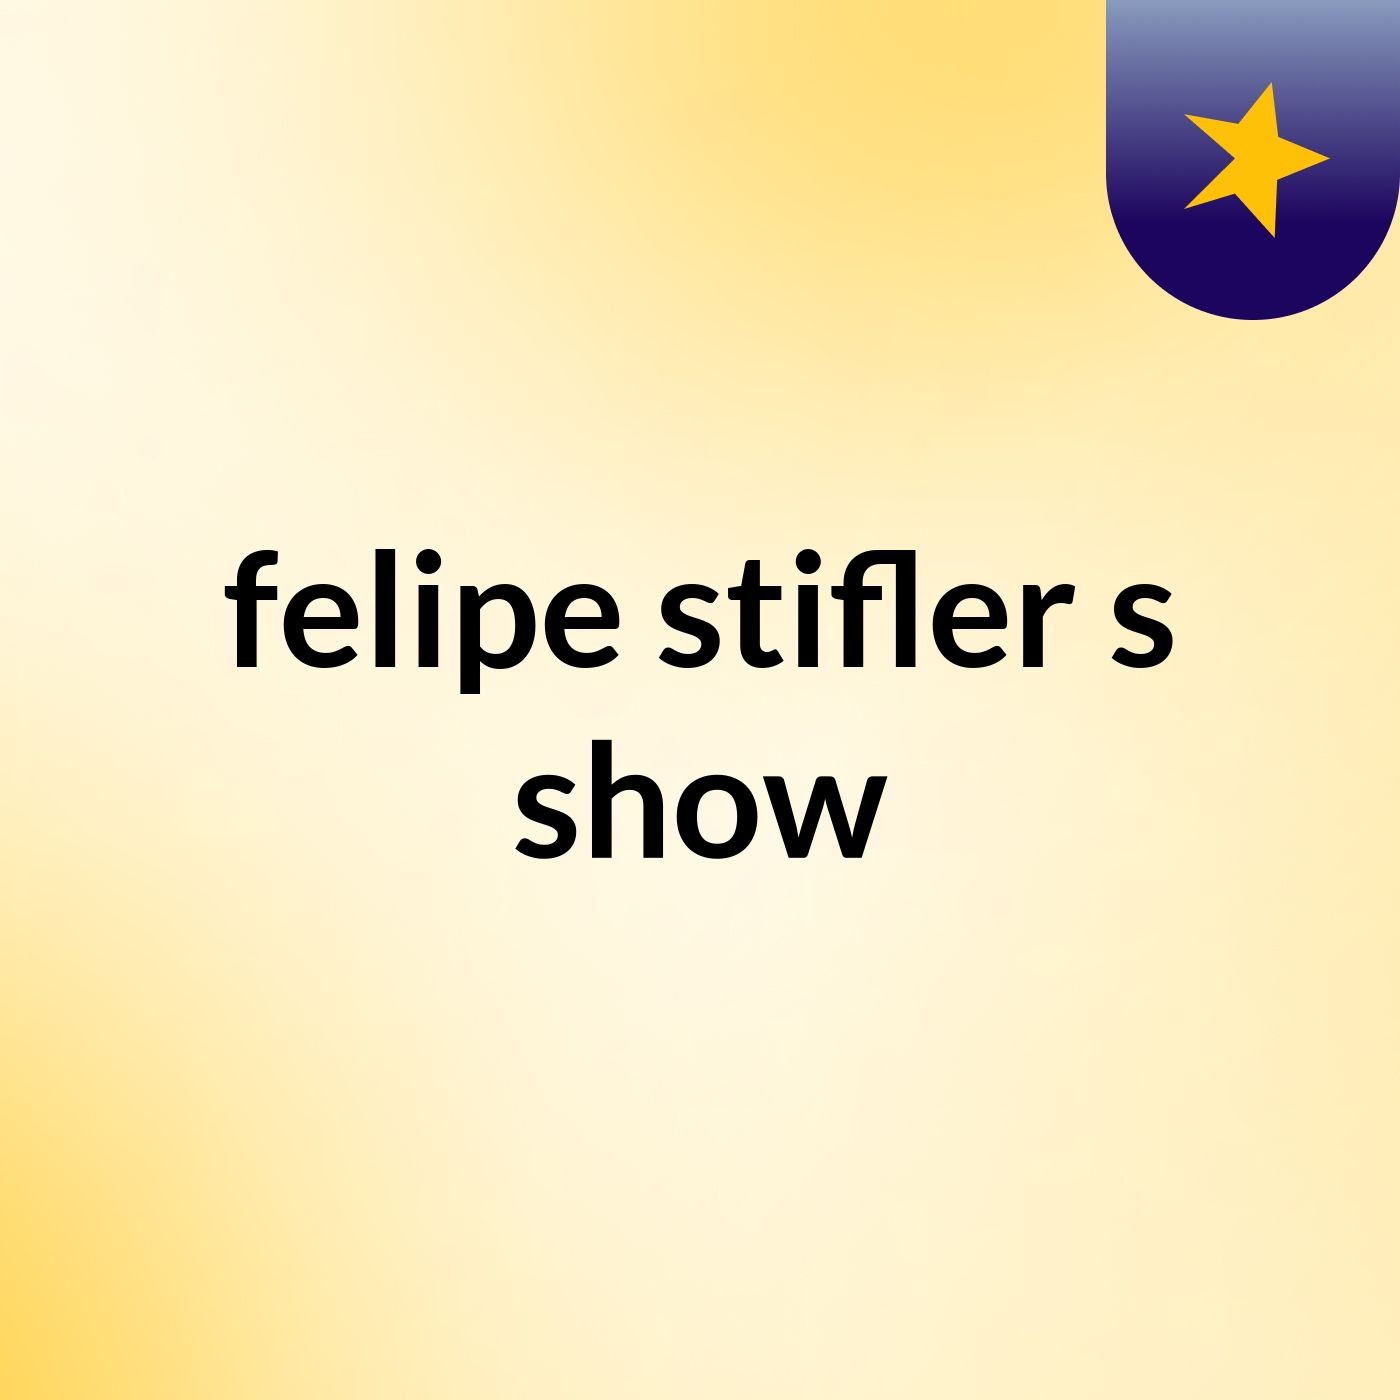 felipe stifler's show